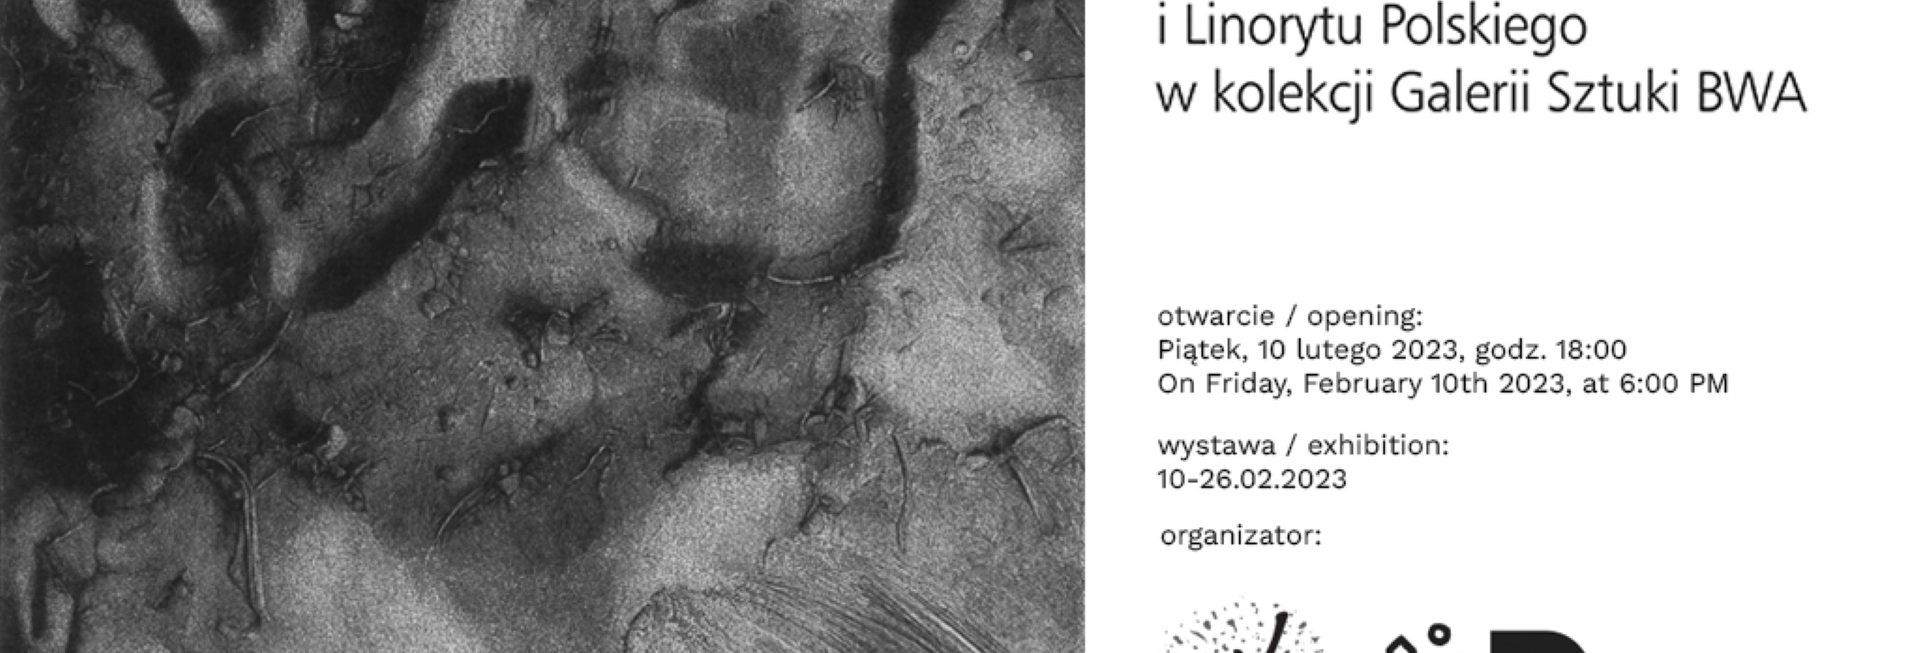 Plakat zapraszający w dniach 10-26 lutego 2023 r. do Olsztyna na wystawę: Laureaci konkursu Quadriennale Drzeworytu i Linorytu Polskiego BWA Olsztyn 2023.